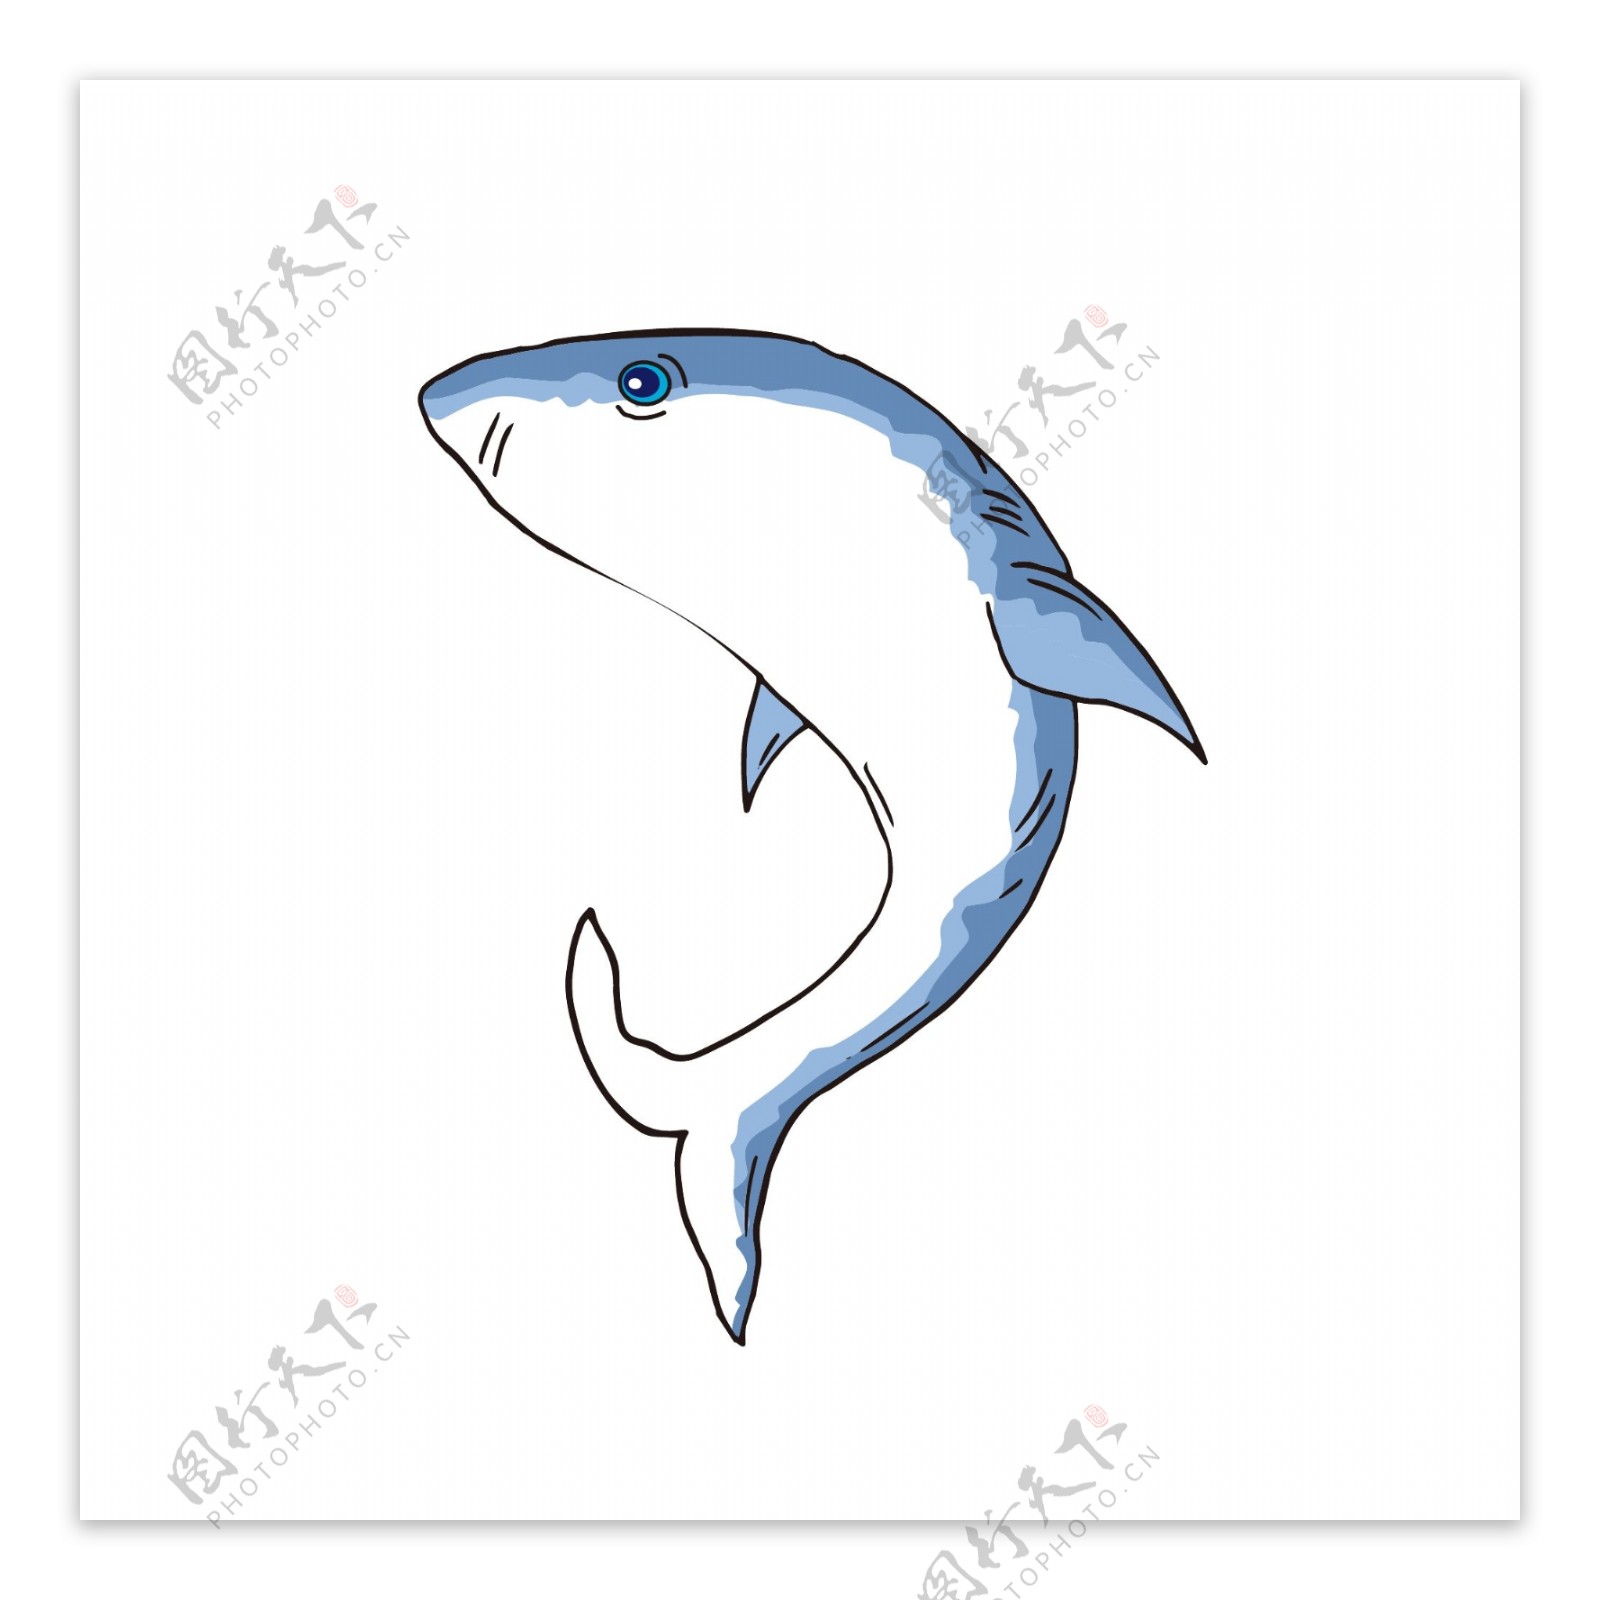 手绘水彩海洋动物蓝色海豚